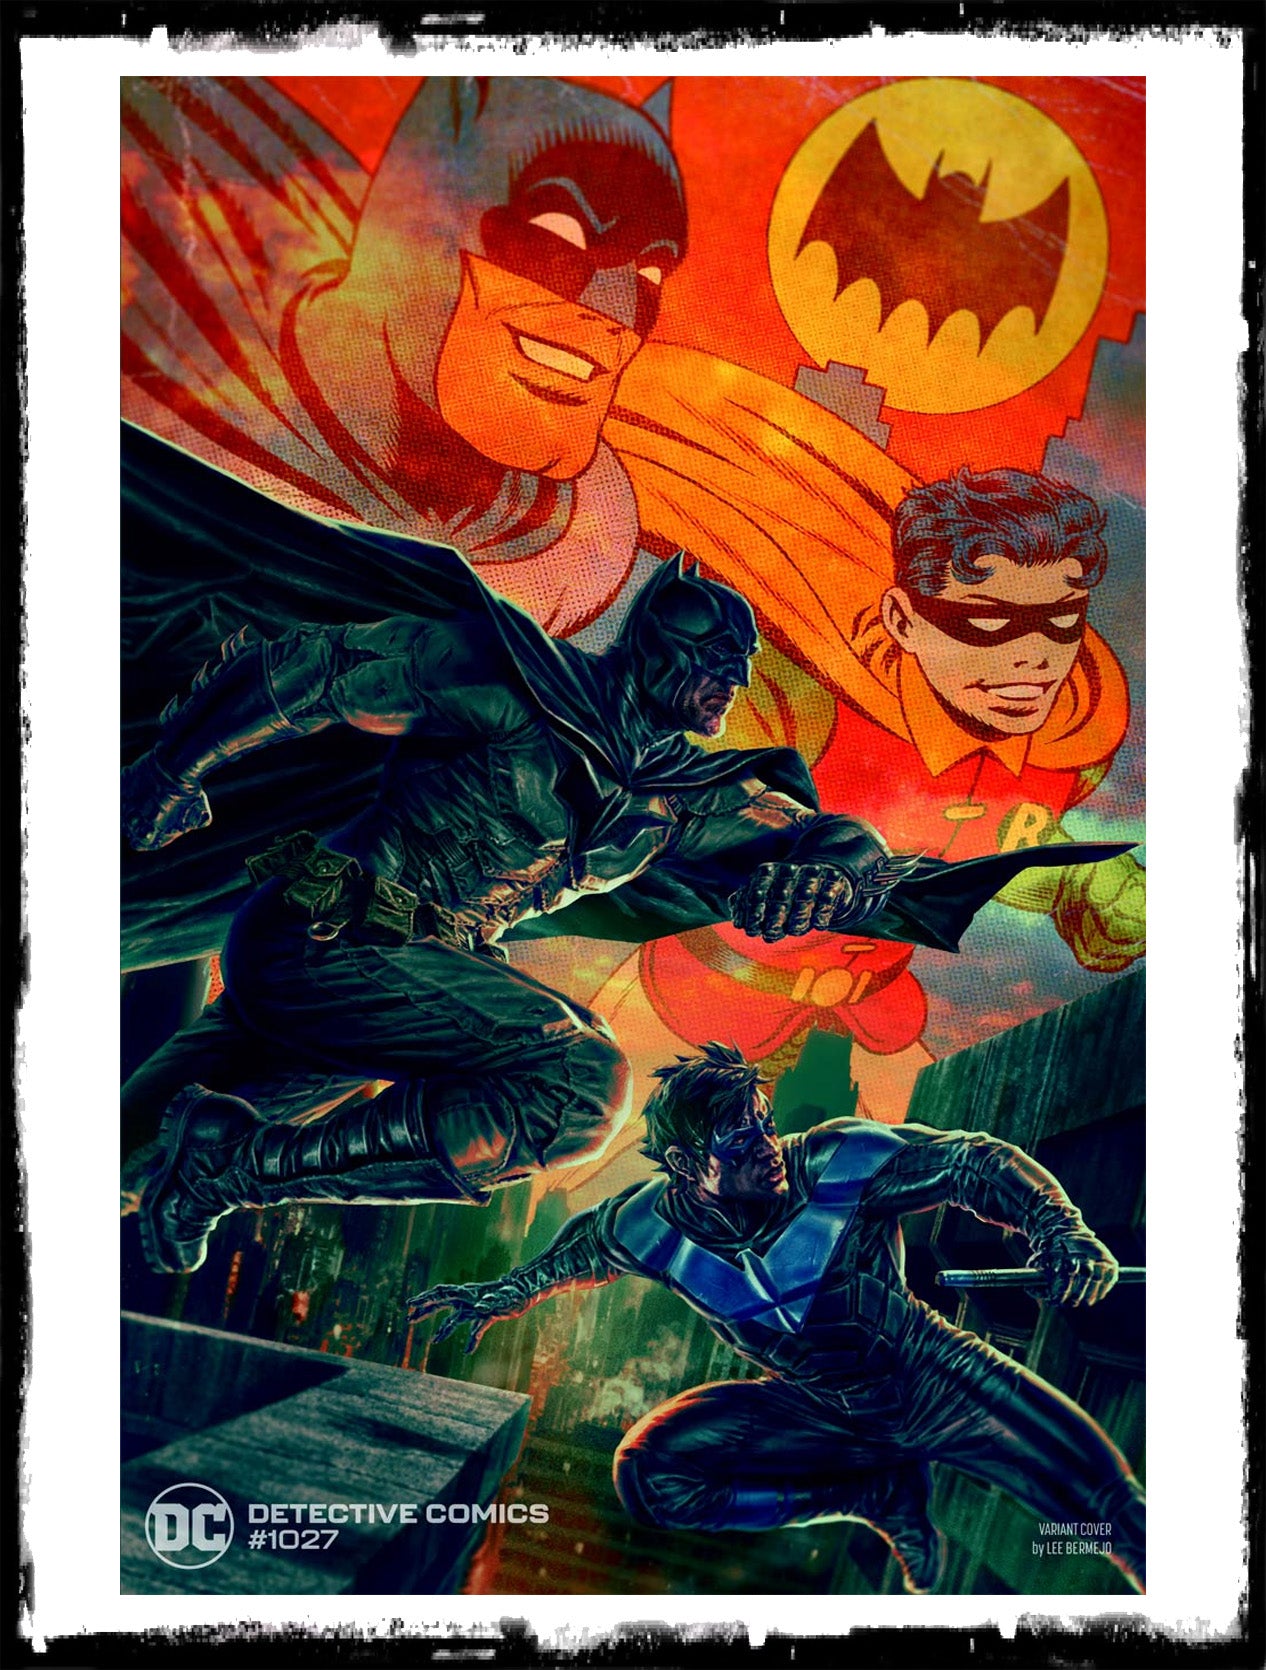 DETECTIVE COMICS - #1027 LEE BERMEJO BATMAN & NIGHTWING COVER (2020 - NM)